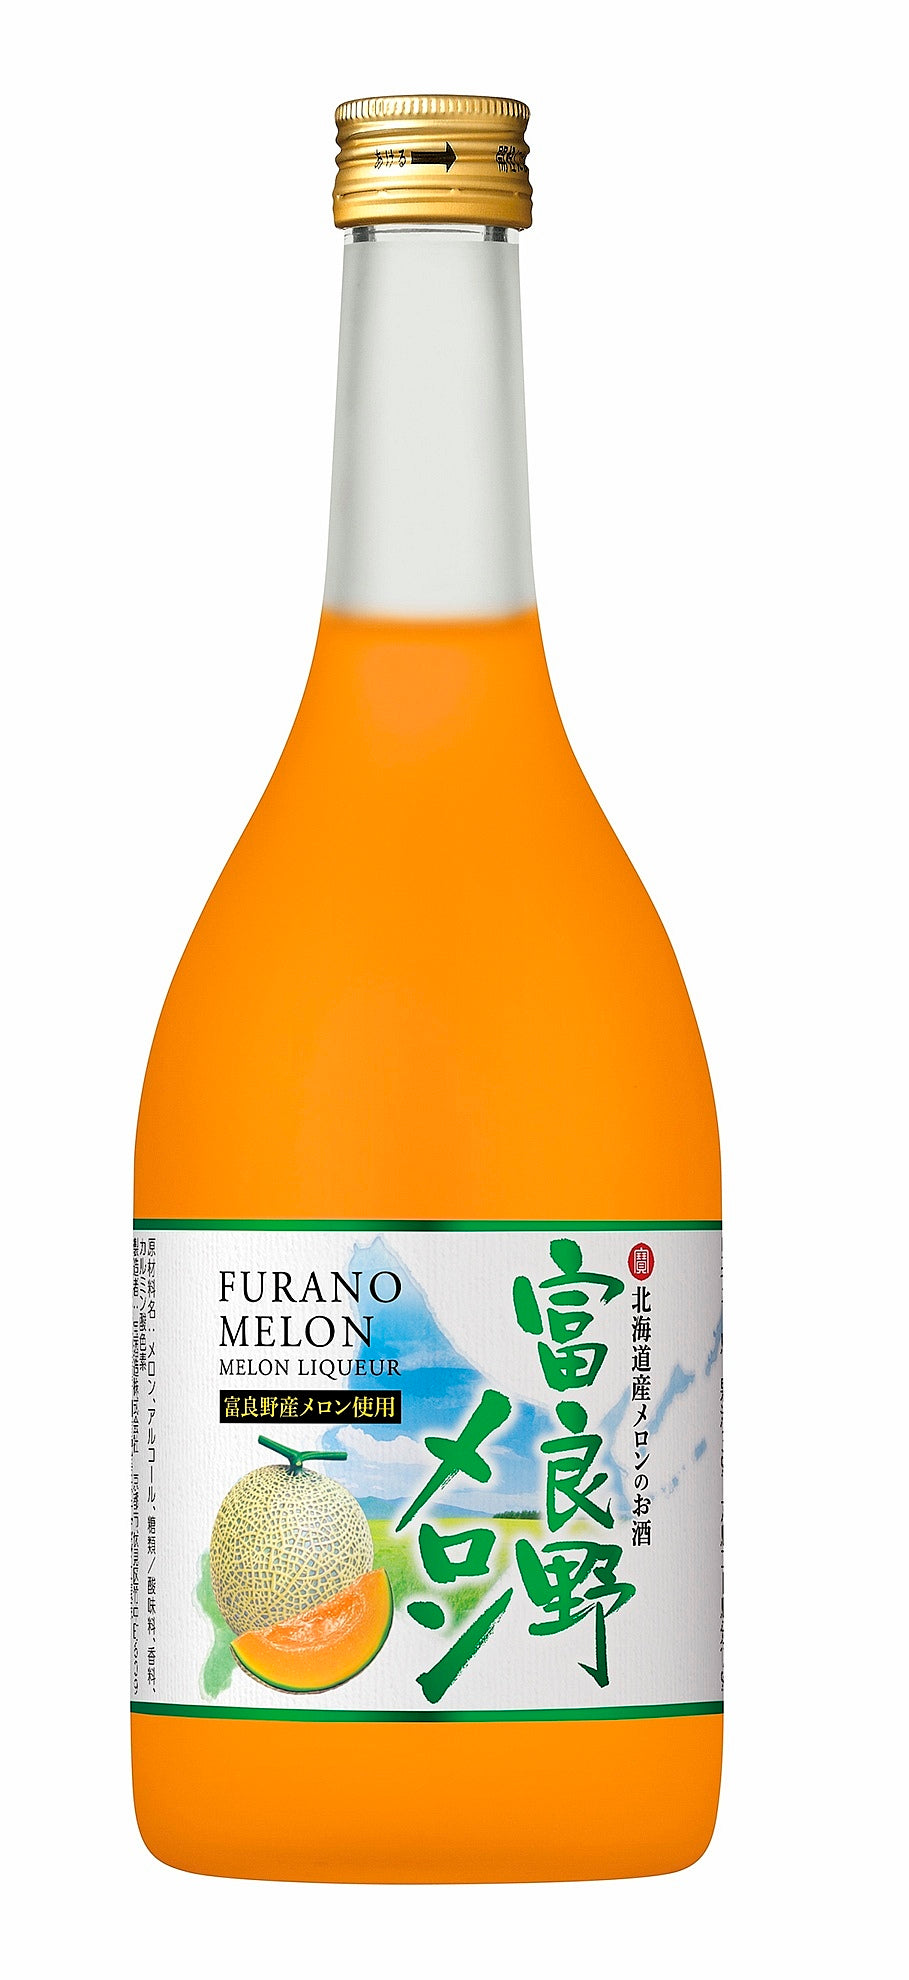 ﻿Hokkaido Furano Melon no Osake
富良野哈密瓜果実酒 720ml 12%vol